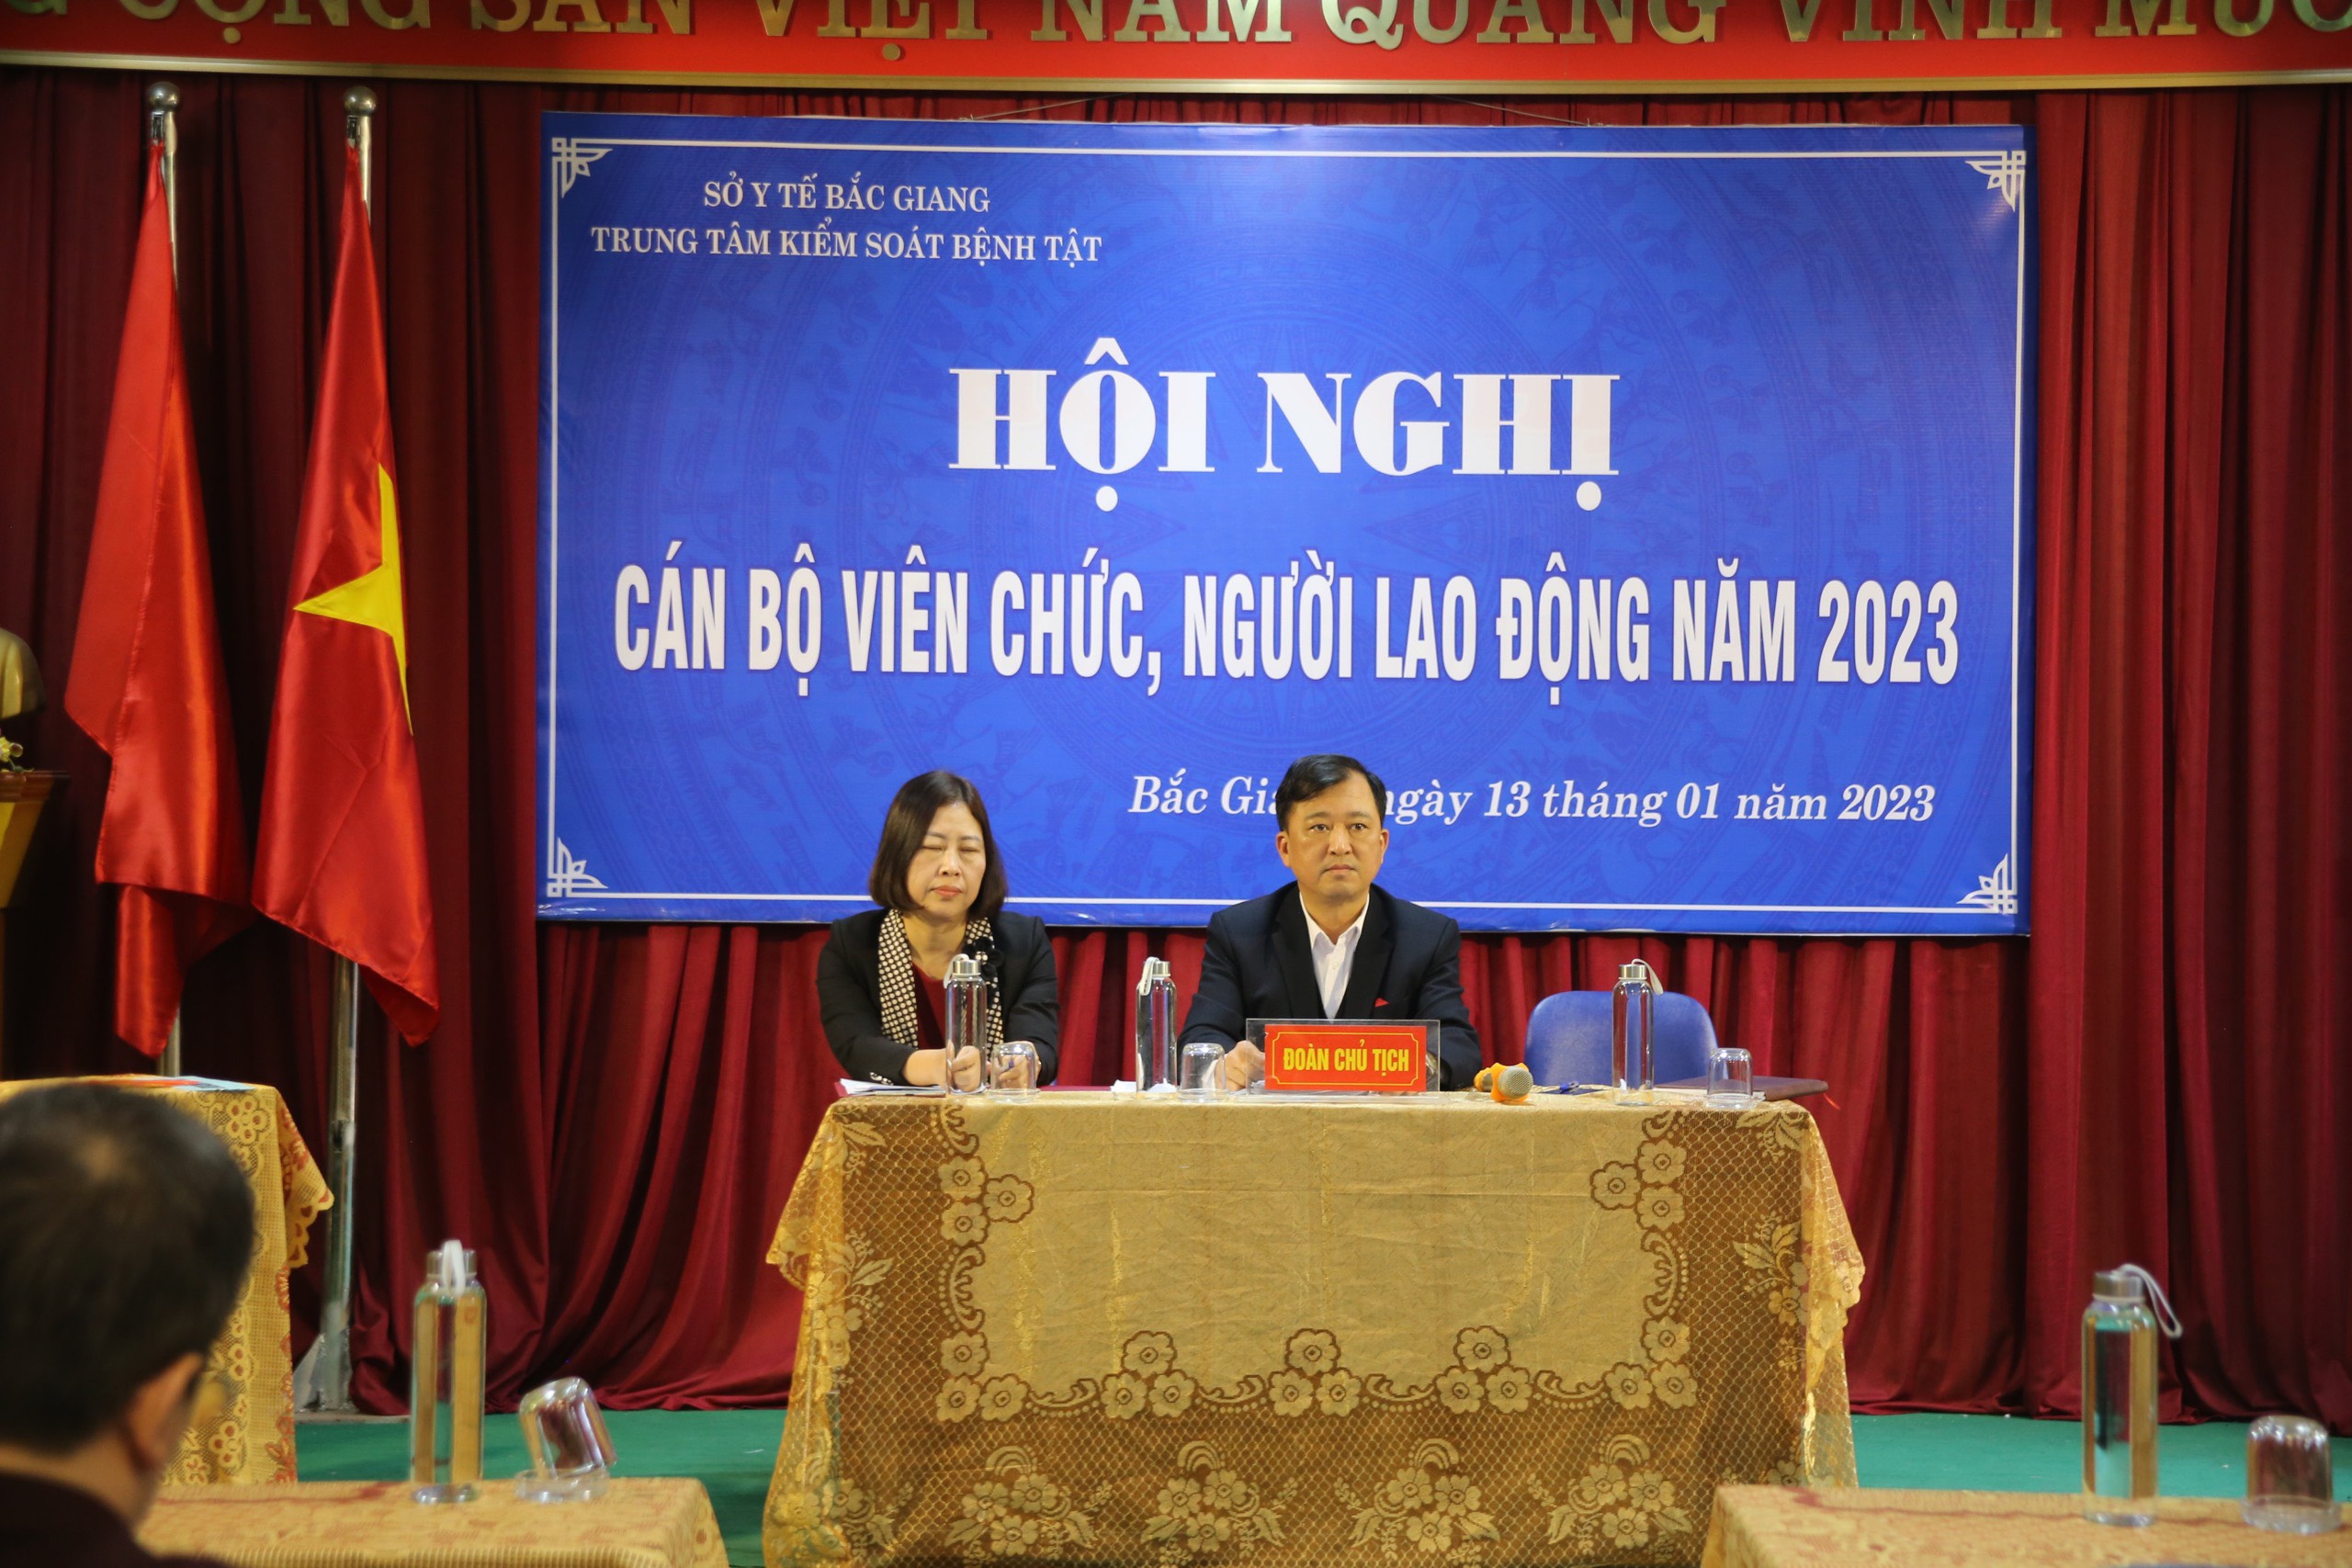 Trung tâm Kiểm soát bệnh tật tỉnh Bắc Giang tổ chức Hội nghị cán bộ, viên chức, người lao động...